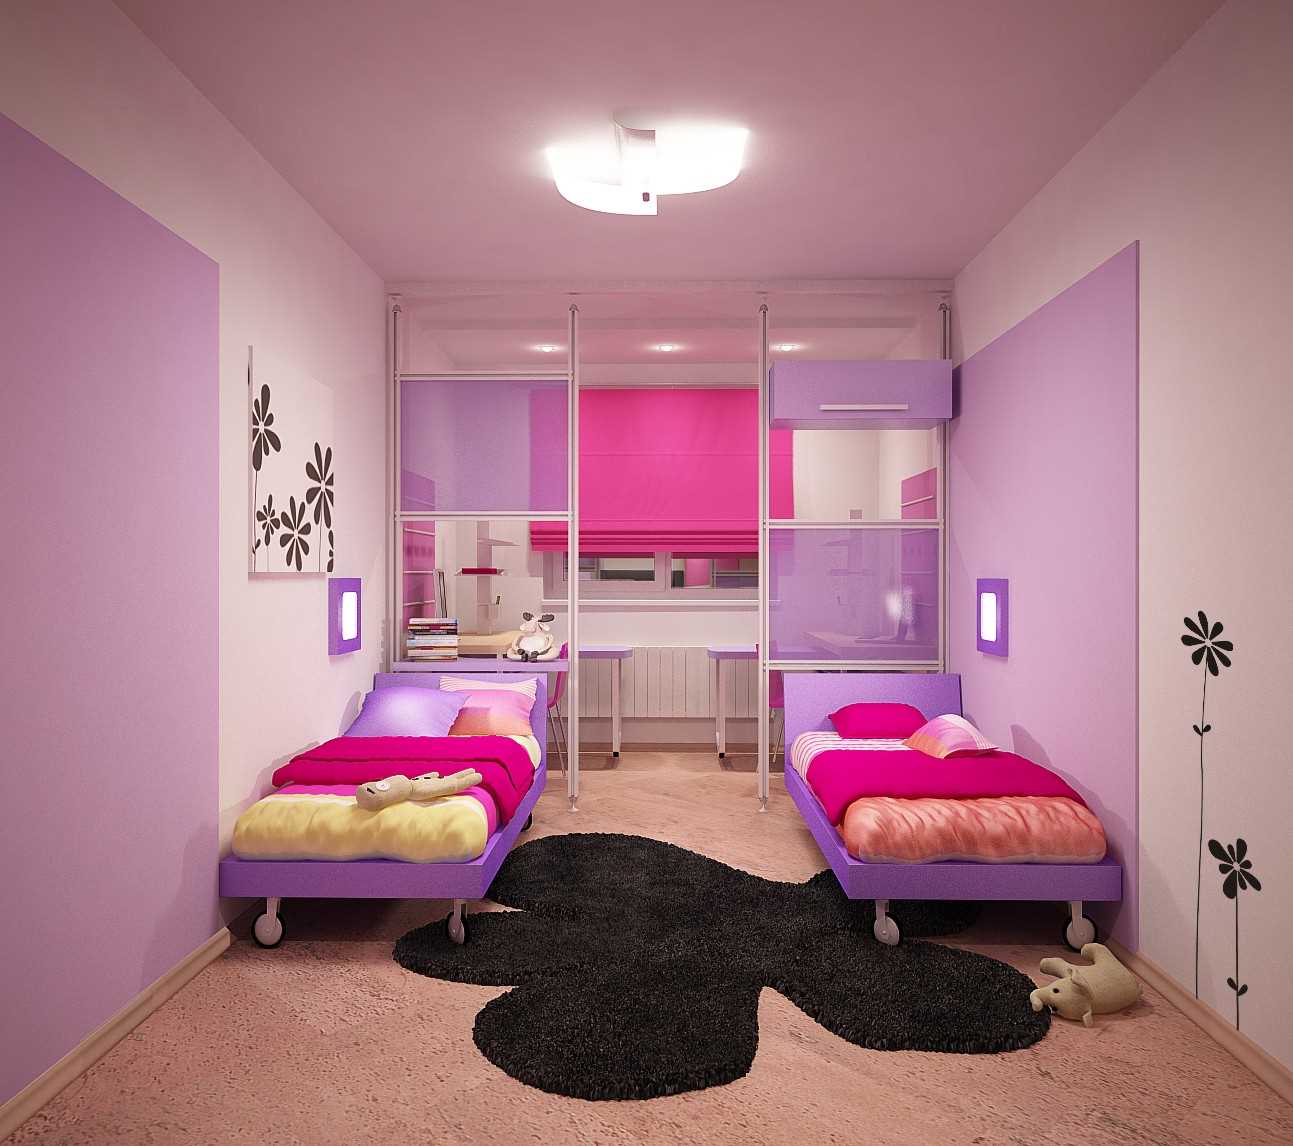 l'idea di un arredamento luminoso per la camera di un bambino per una ragazza di 12 mq